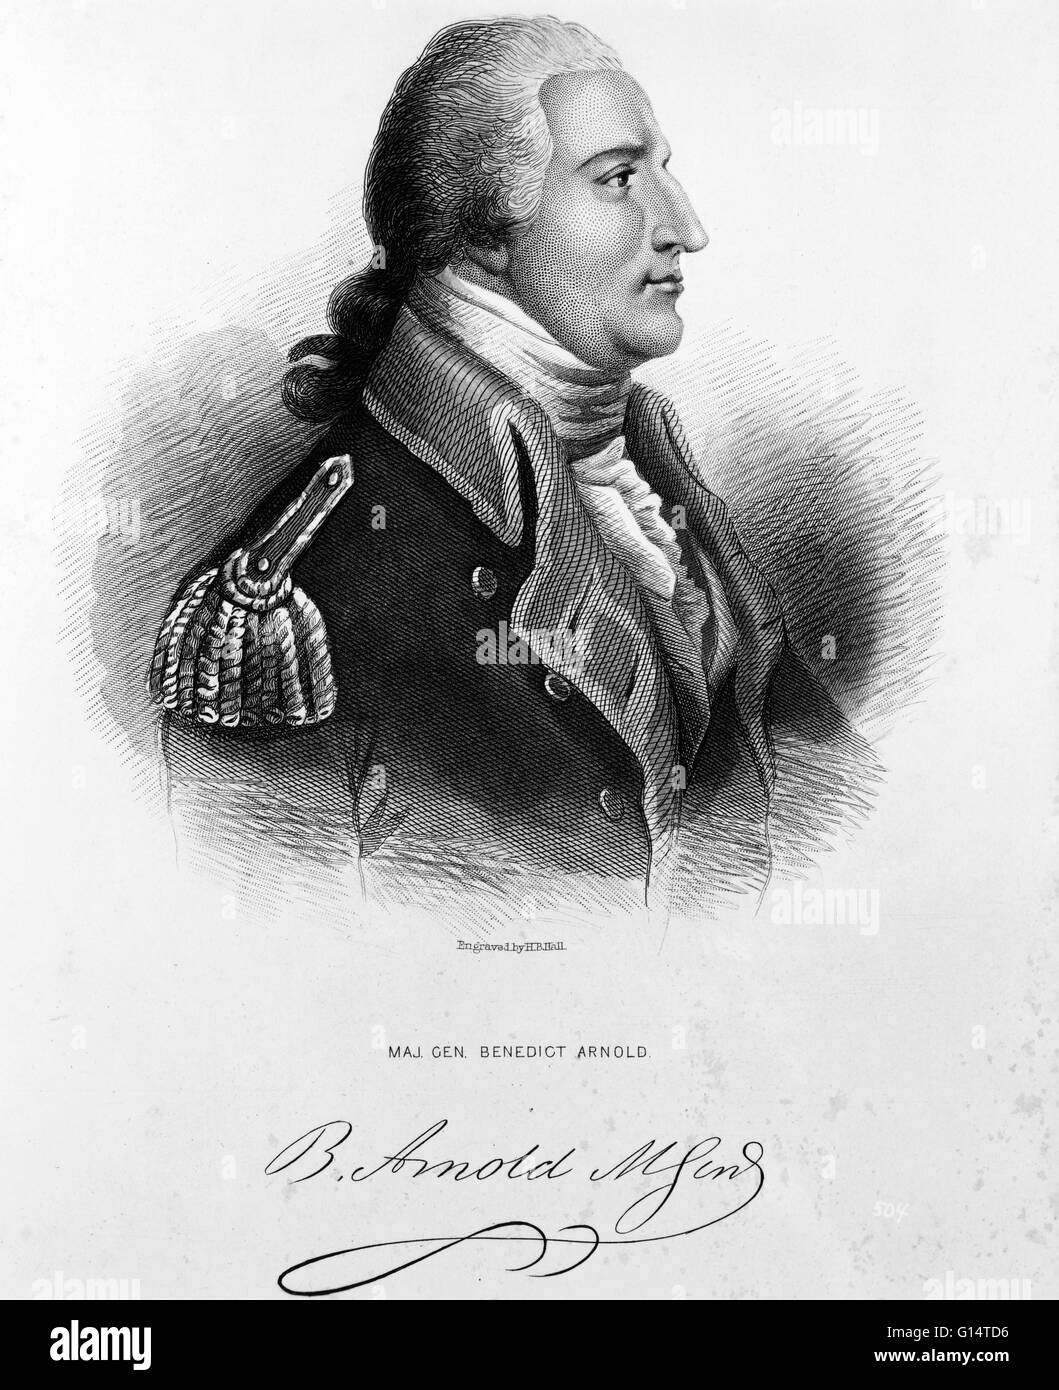 Benedict Arnold est un général de la guerre de la Révolution américaine qui ont changé de camp et rejoint les Anglais en 1779. Arnold fait plans secrets avec les Britanniques pour prendre le contrôle de West Point. Lorsque le Major John André a été capturé, il a révélé le complot pour t Banque D'Images